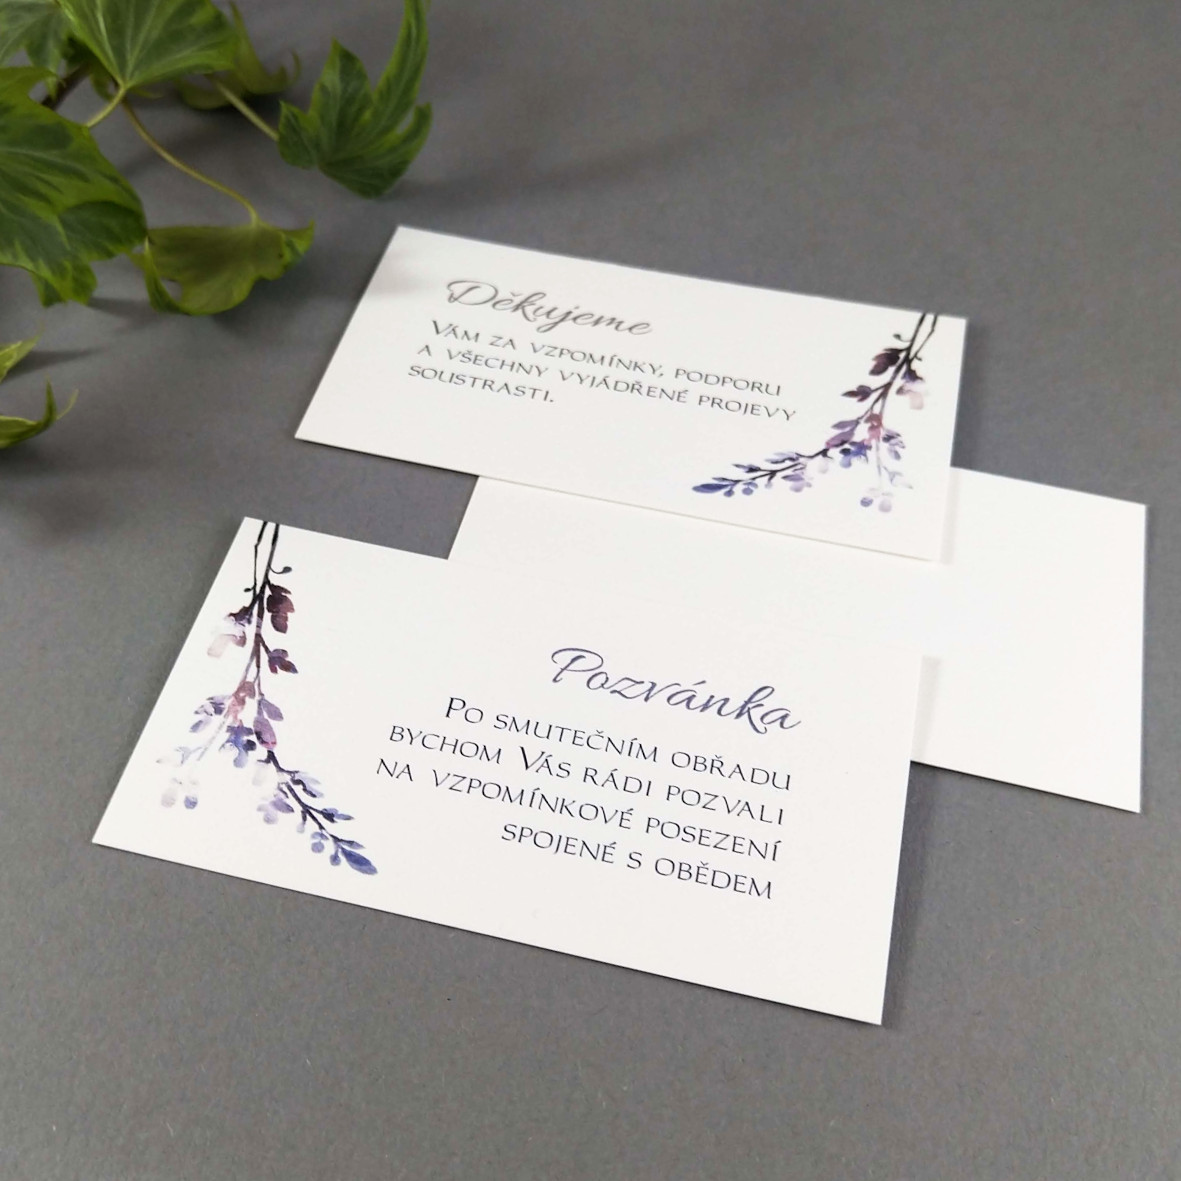 Pozvánka, informační karta – s motivem fialového vřesu, formát 85 × 55 mm, jednostranná